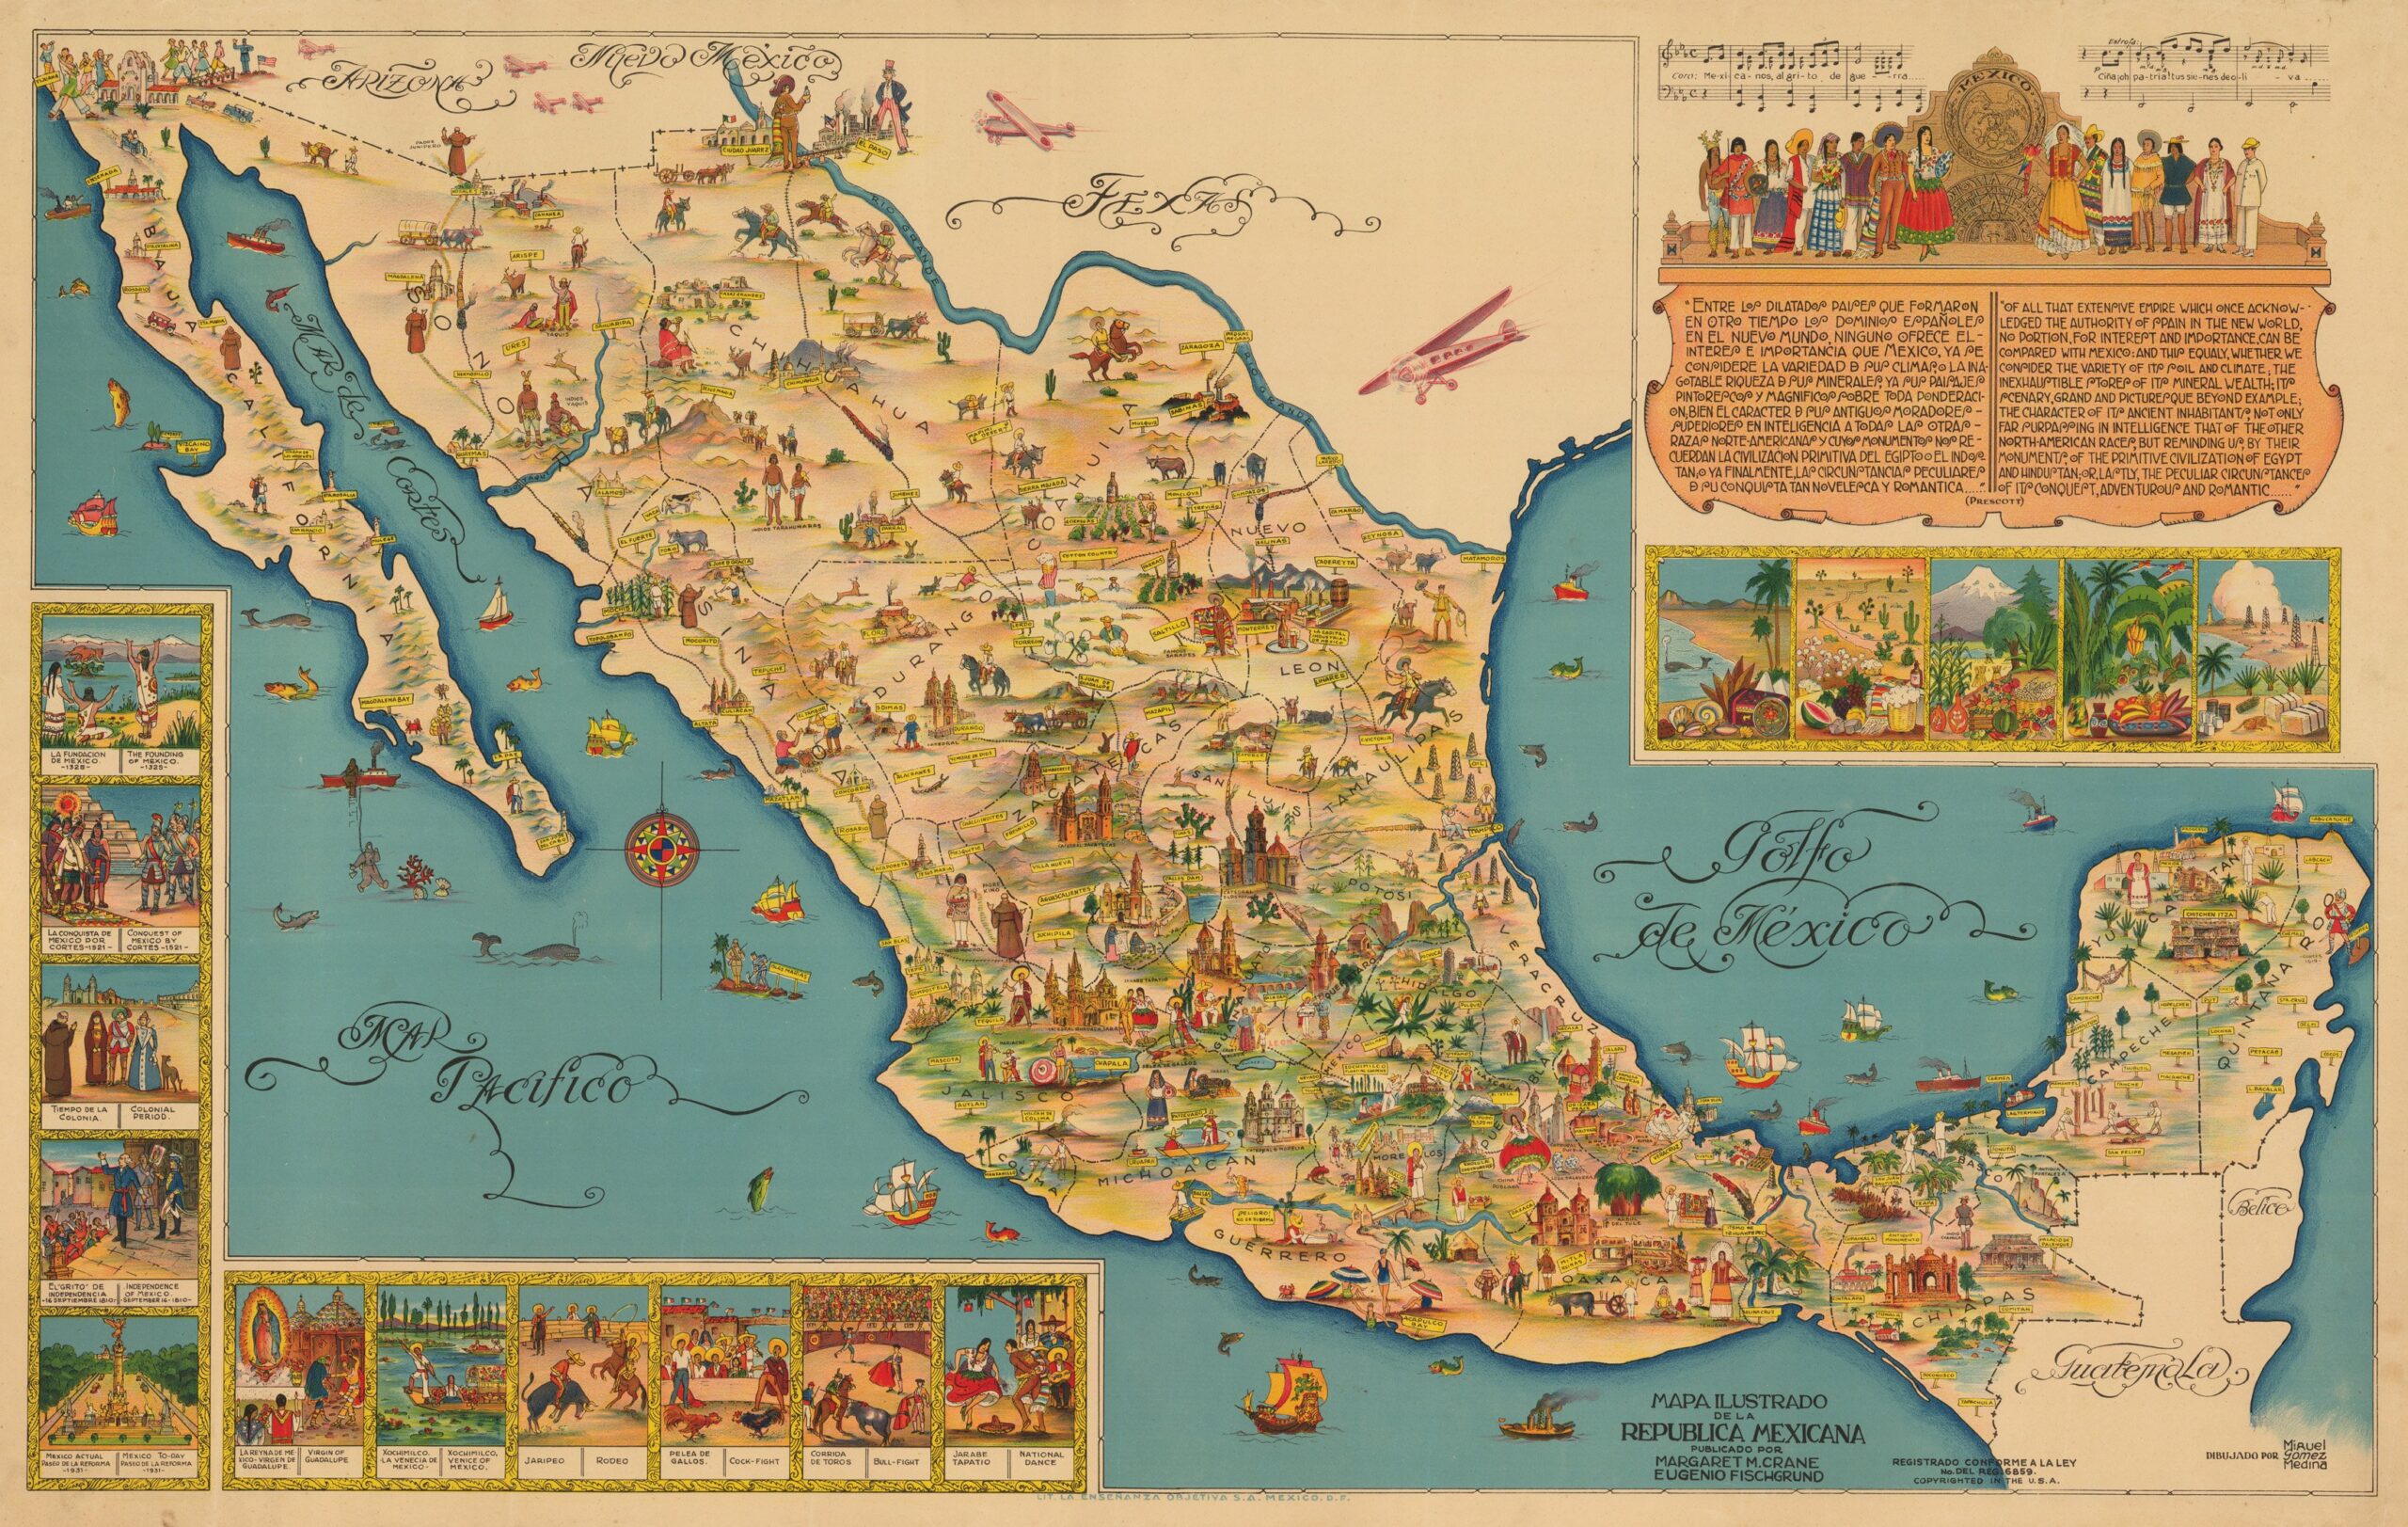 Mapa ilustrado de la República Mexicana (1930)